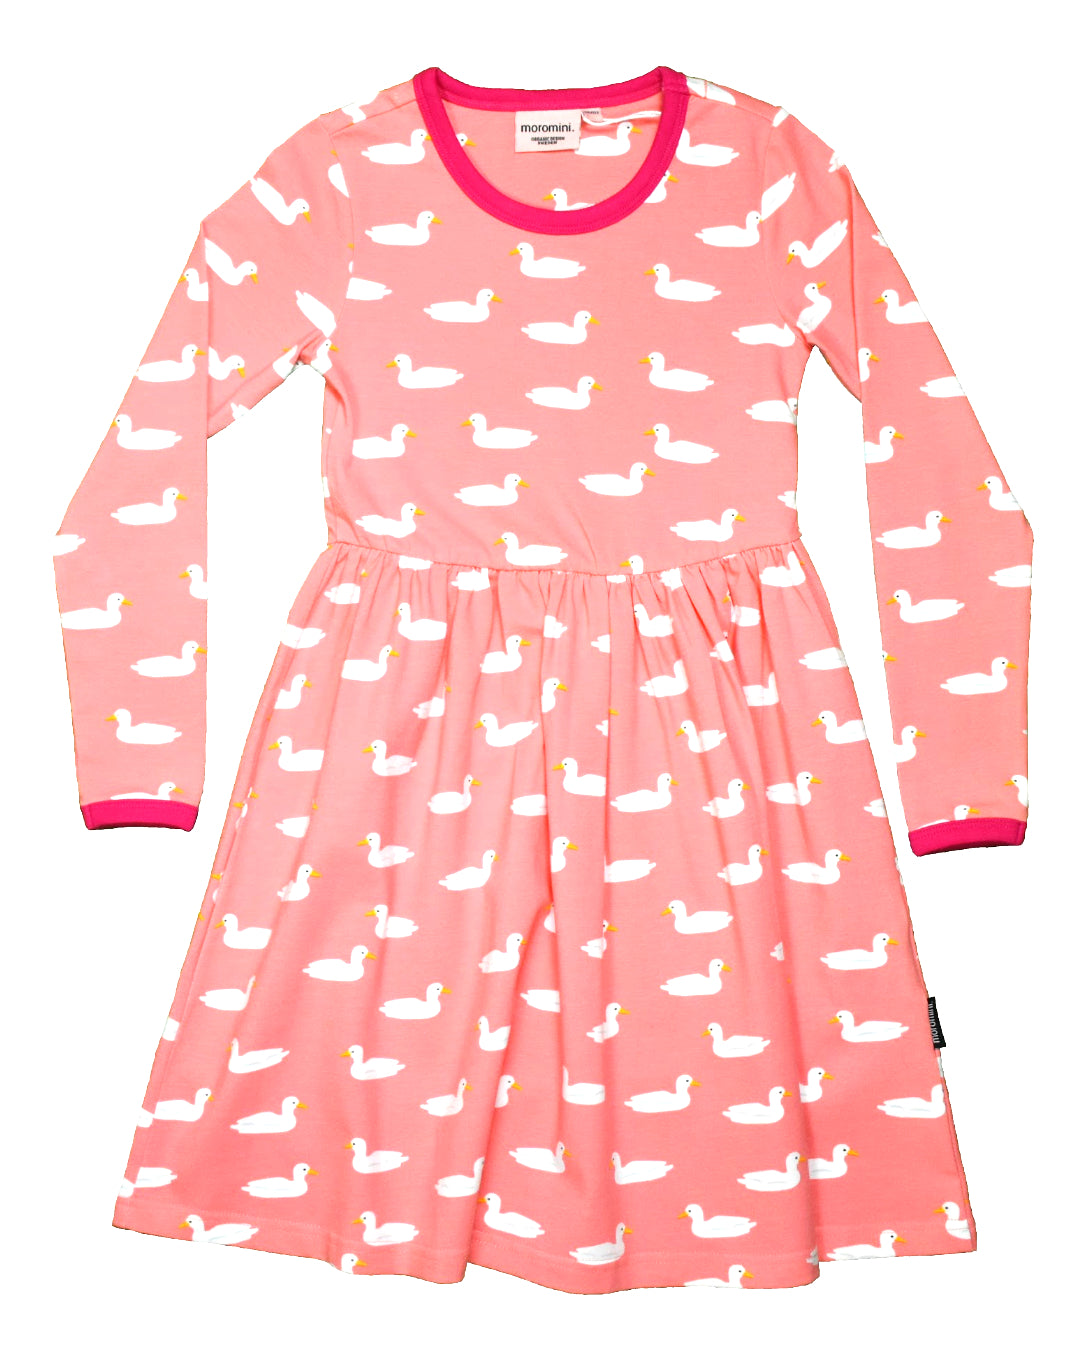 Rosa Kleid für Kinder mit weißen Enten aus Biobaumwolle von moromini